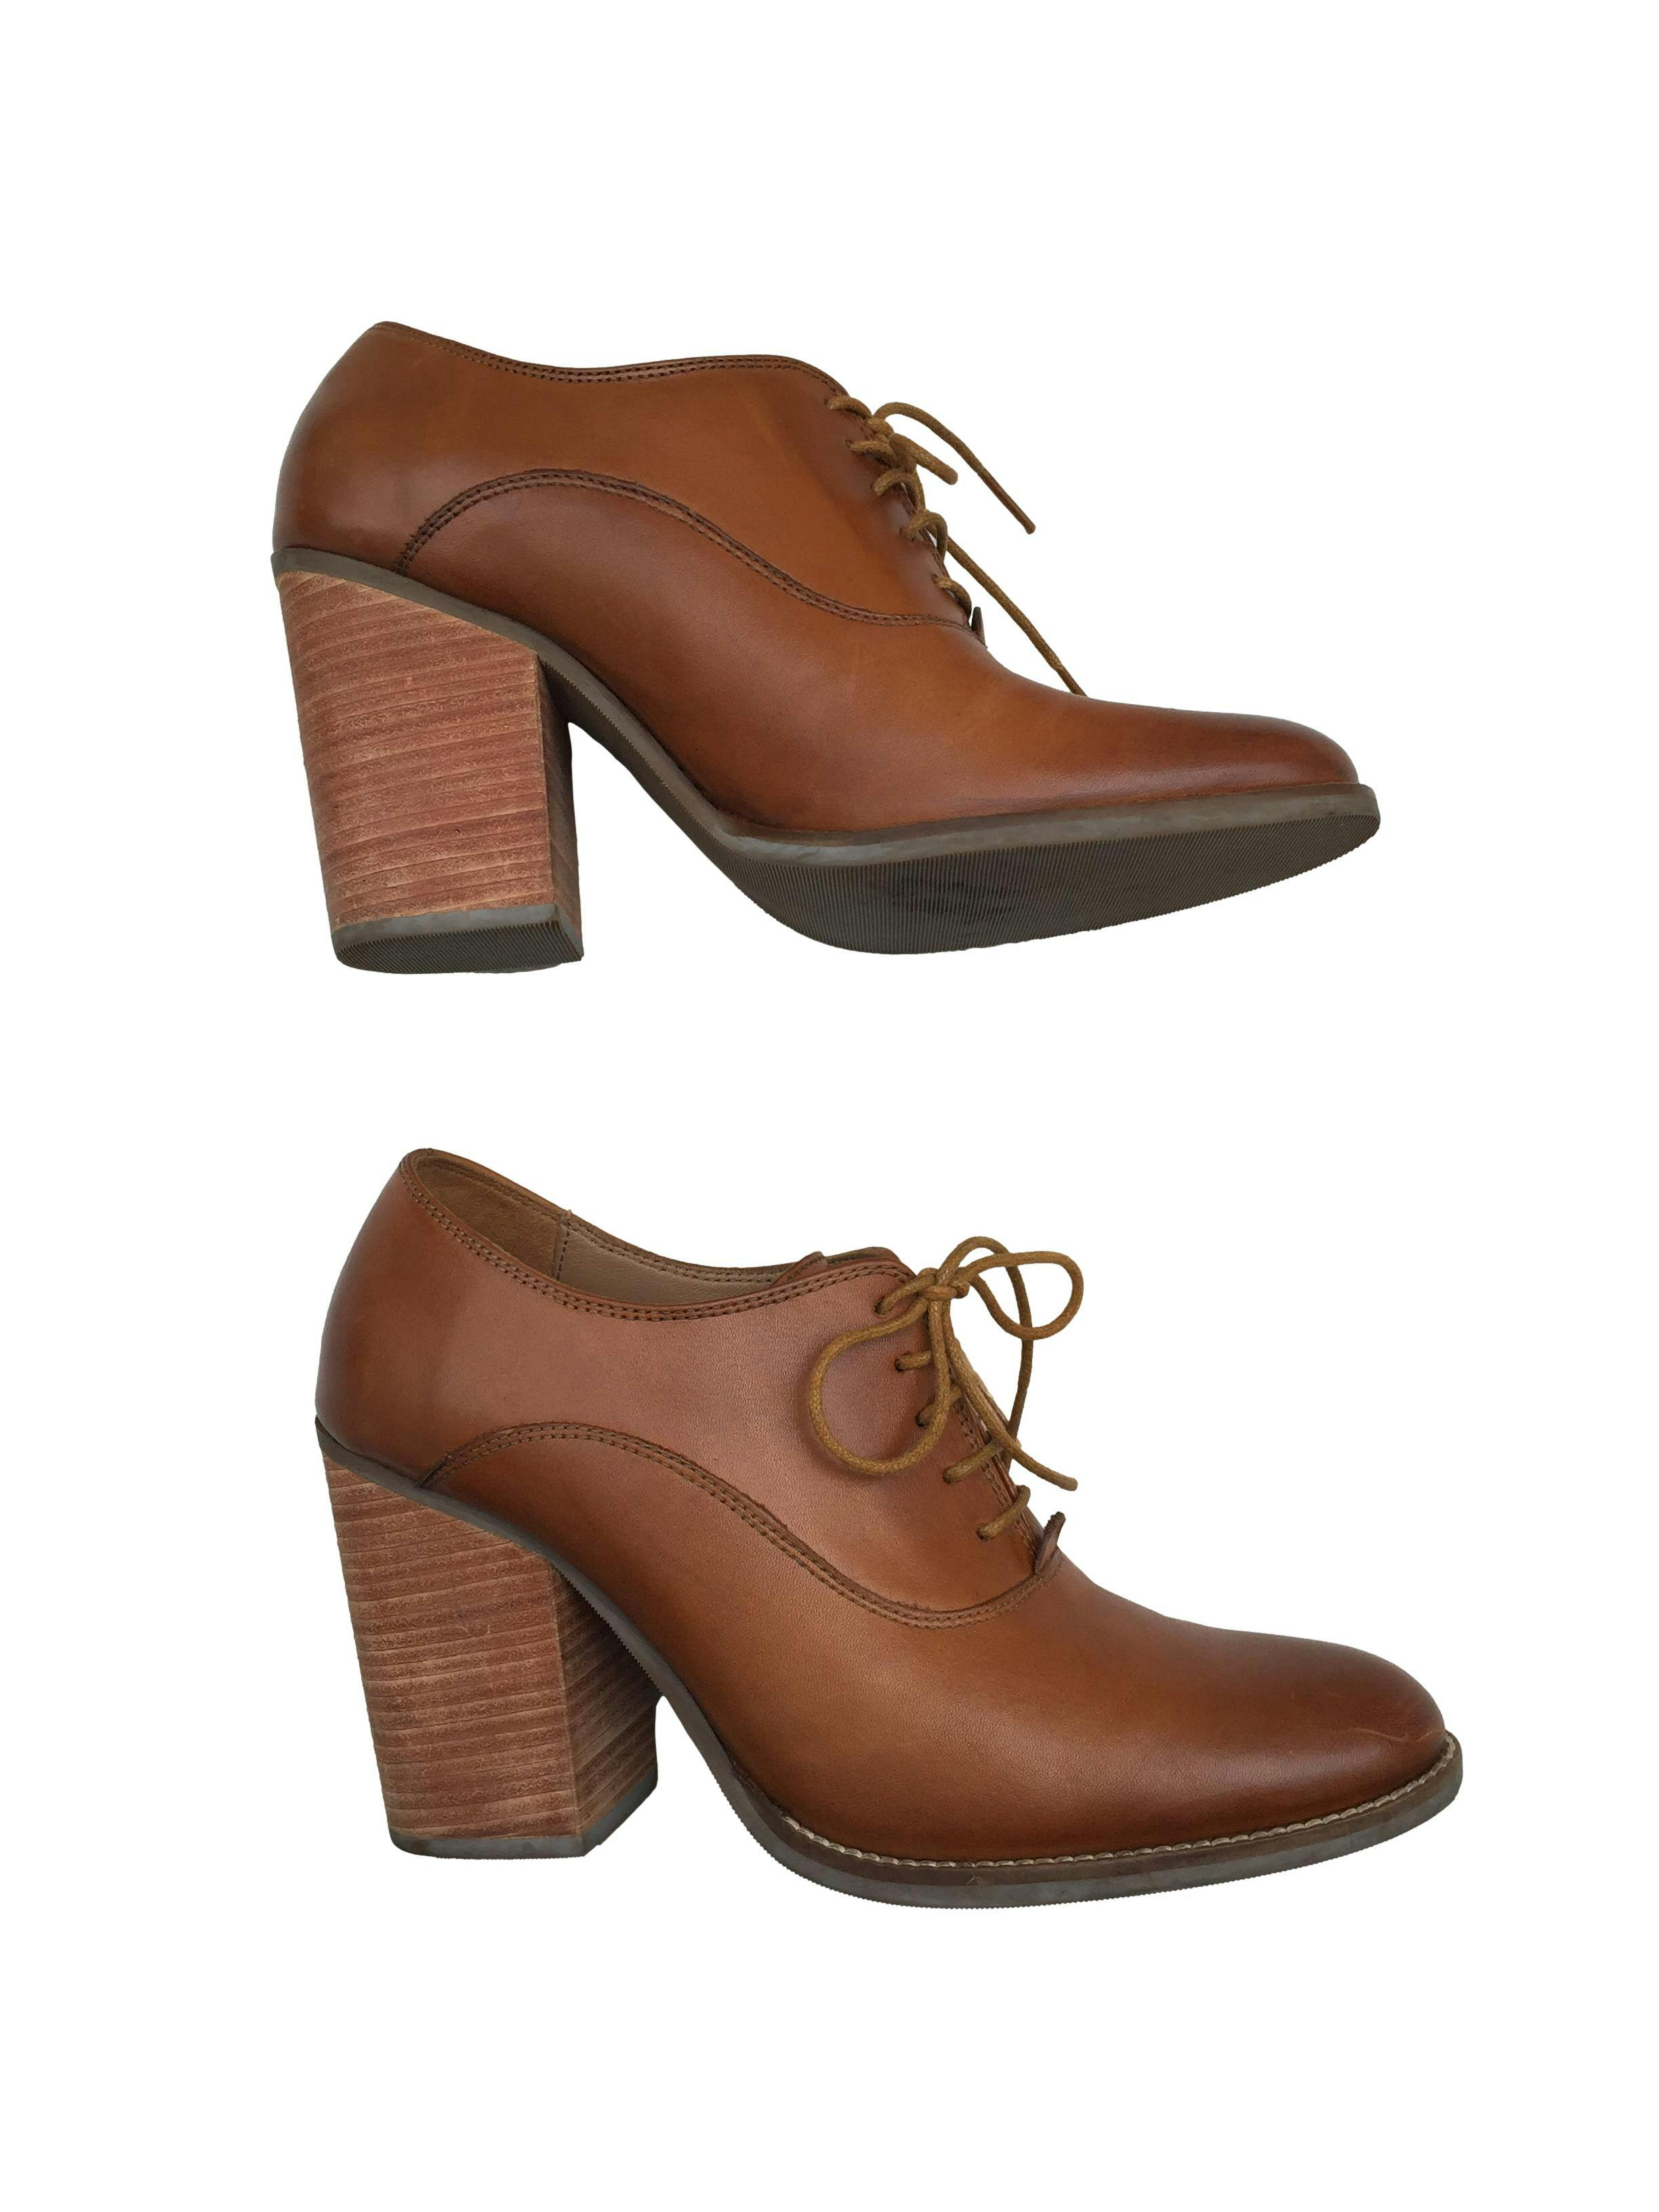 Zapatos Bruno Ferrini 100% cuero color calabaza con cordones, taco 9cm. Estado 9/10. Precio original S/570.